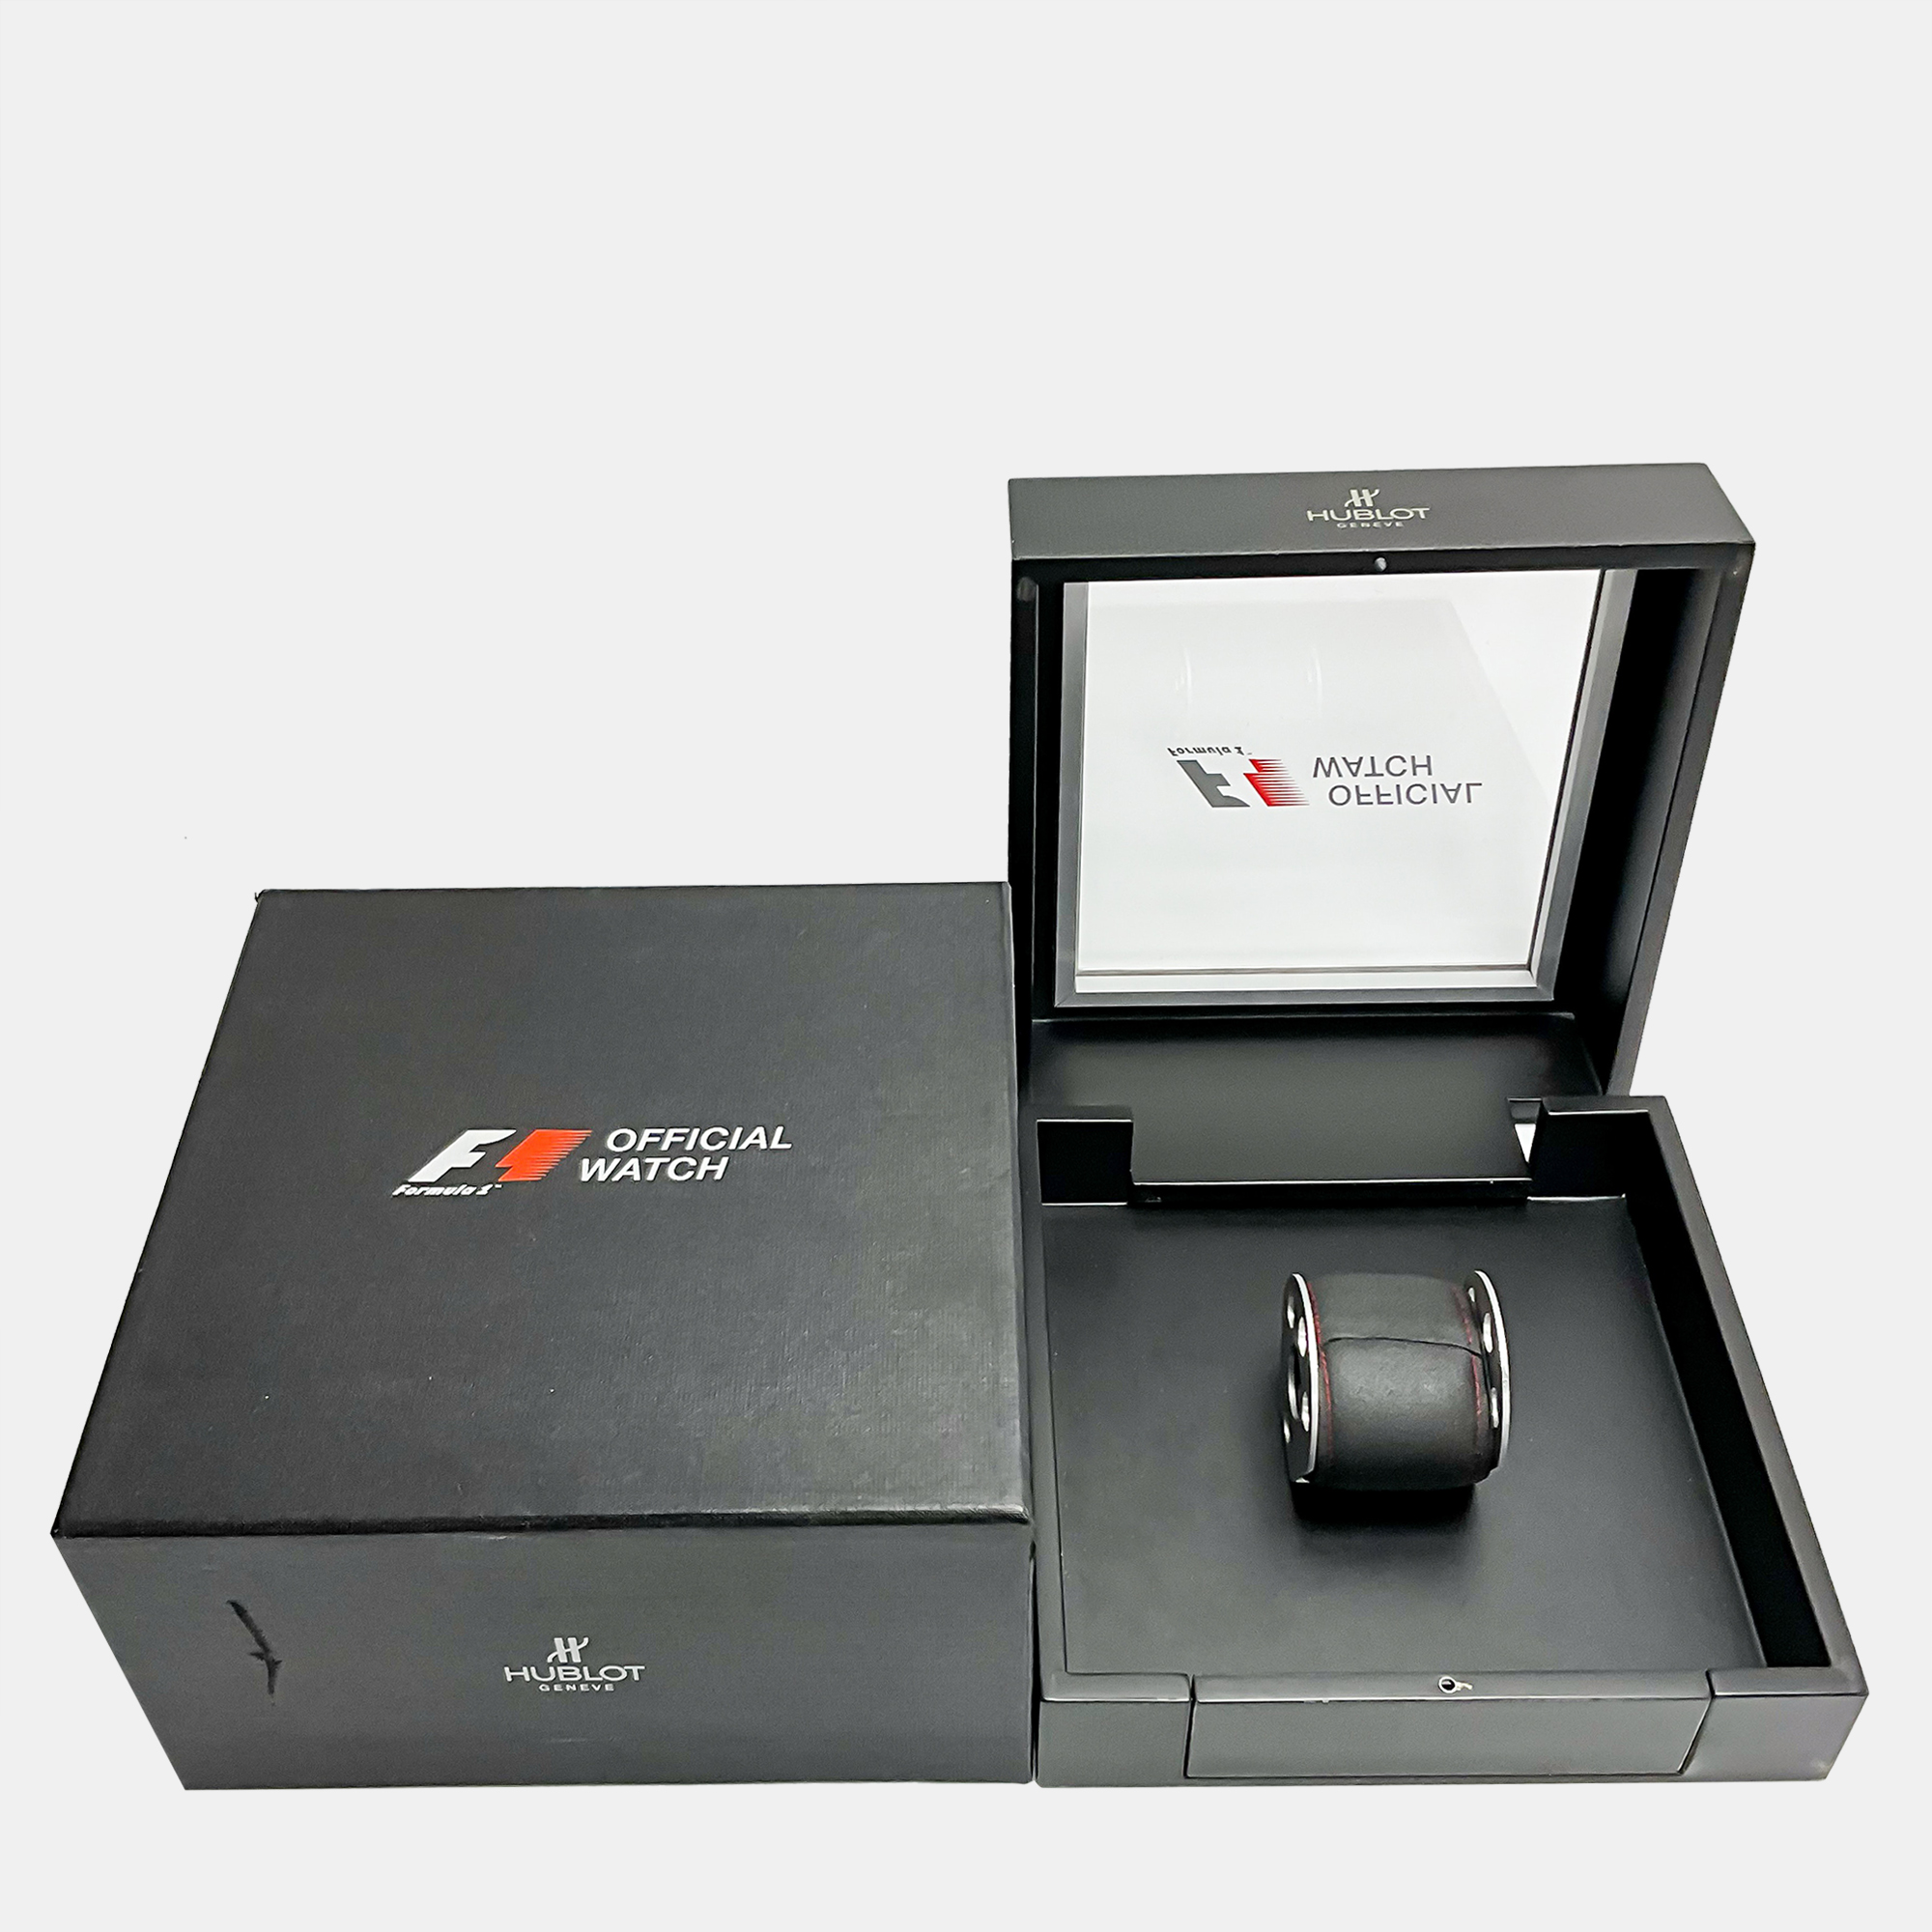 Hublot Black Carbon Fiber King Power 703.QM.1129.HR.FIL11 Automatic Men's Wristwatch 48 Mm